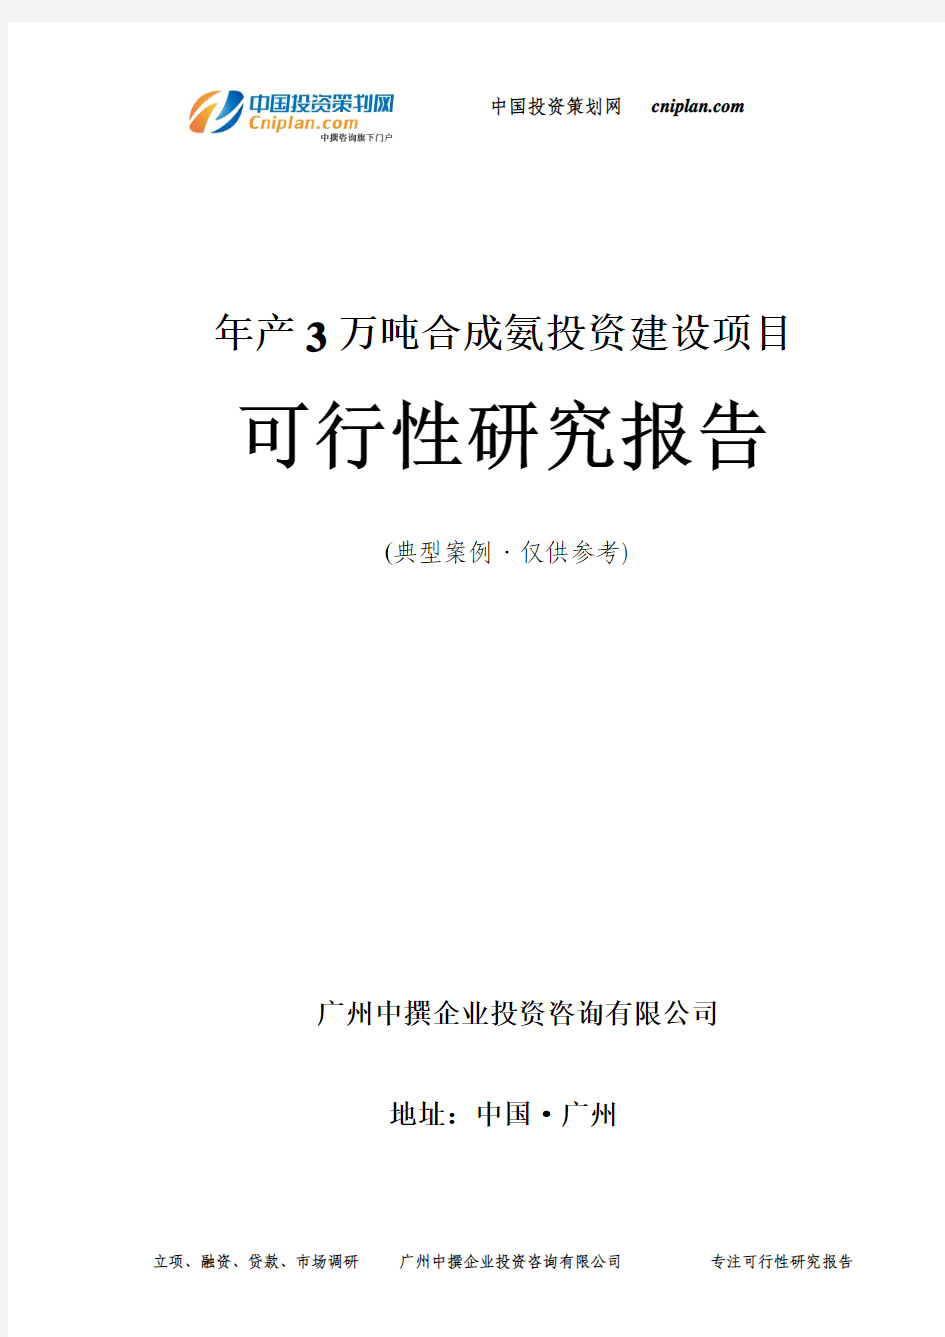 年产3万吨合成氨投资建设项目可行性研究报告-广州中撰咨询